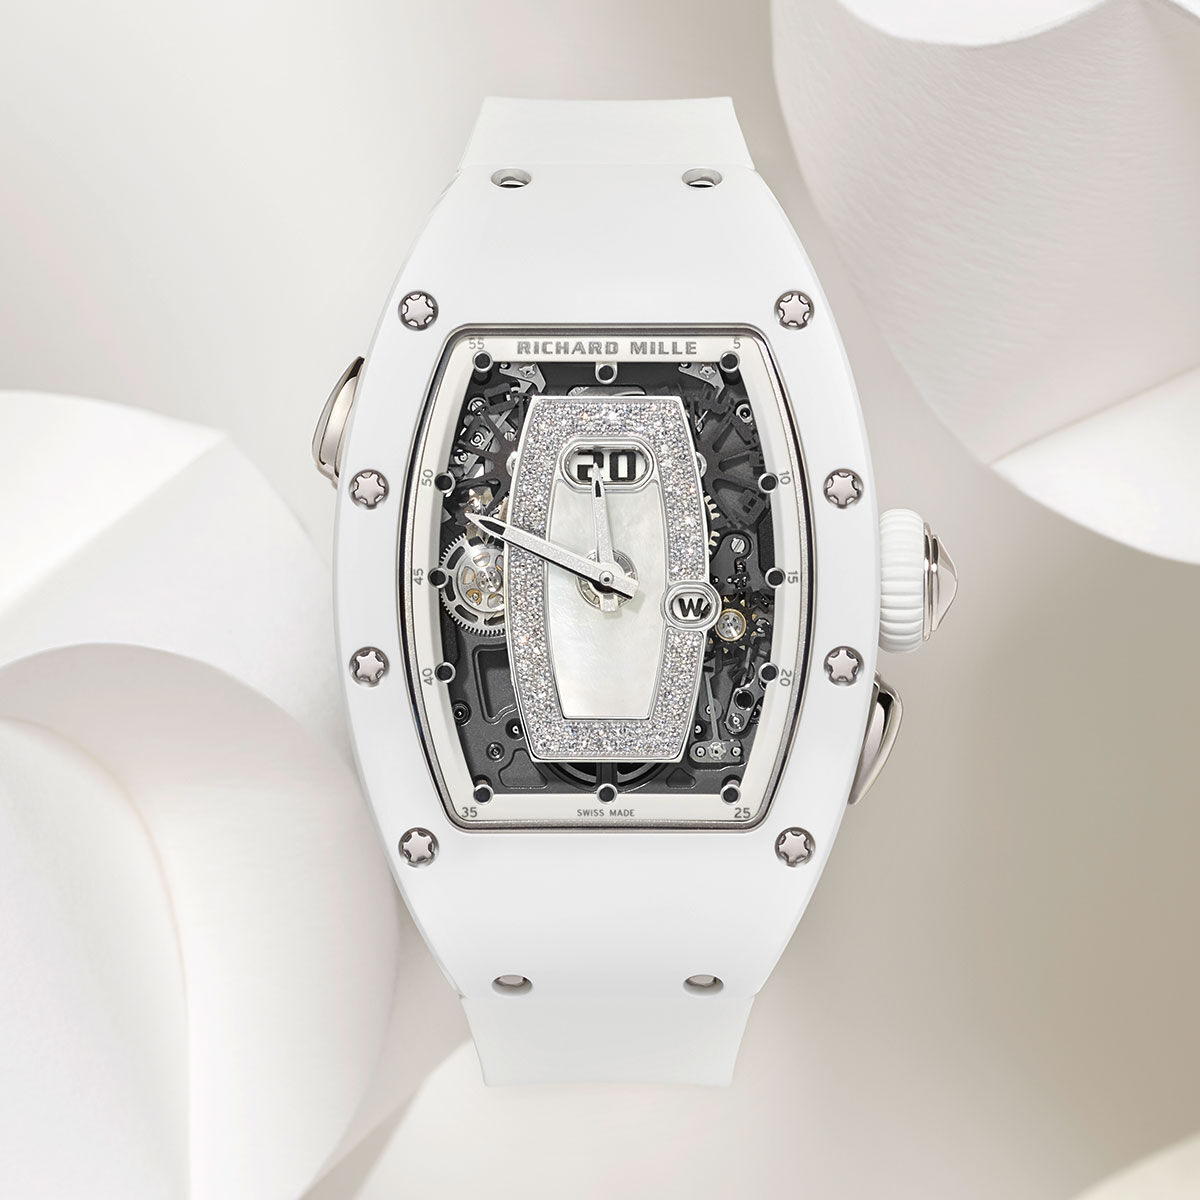 Giới thiệu đồng hồ Richard Mille RM 037 White Ceramic Automatic dành cho  phái đẹp